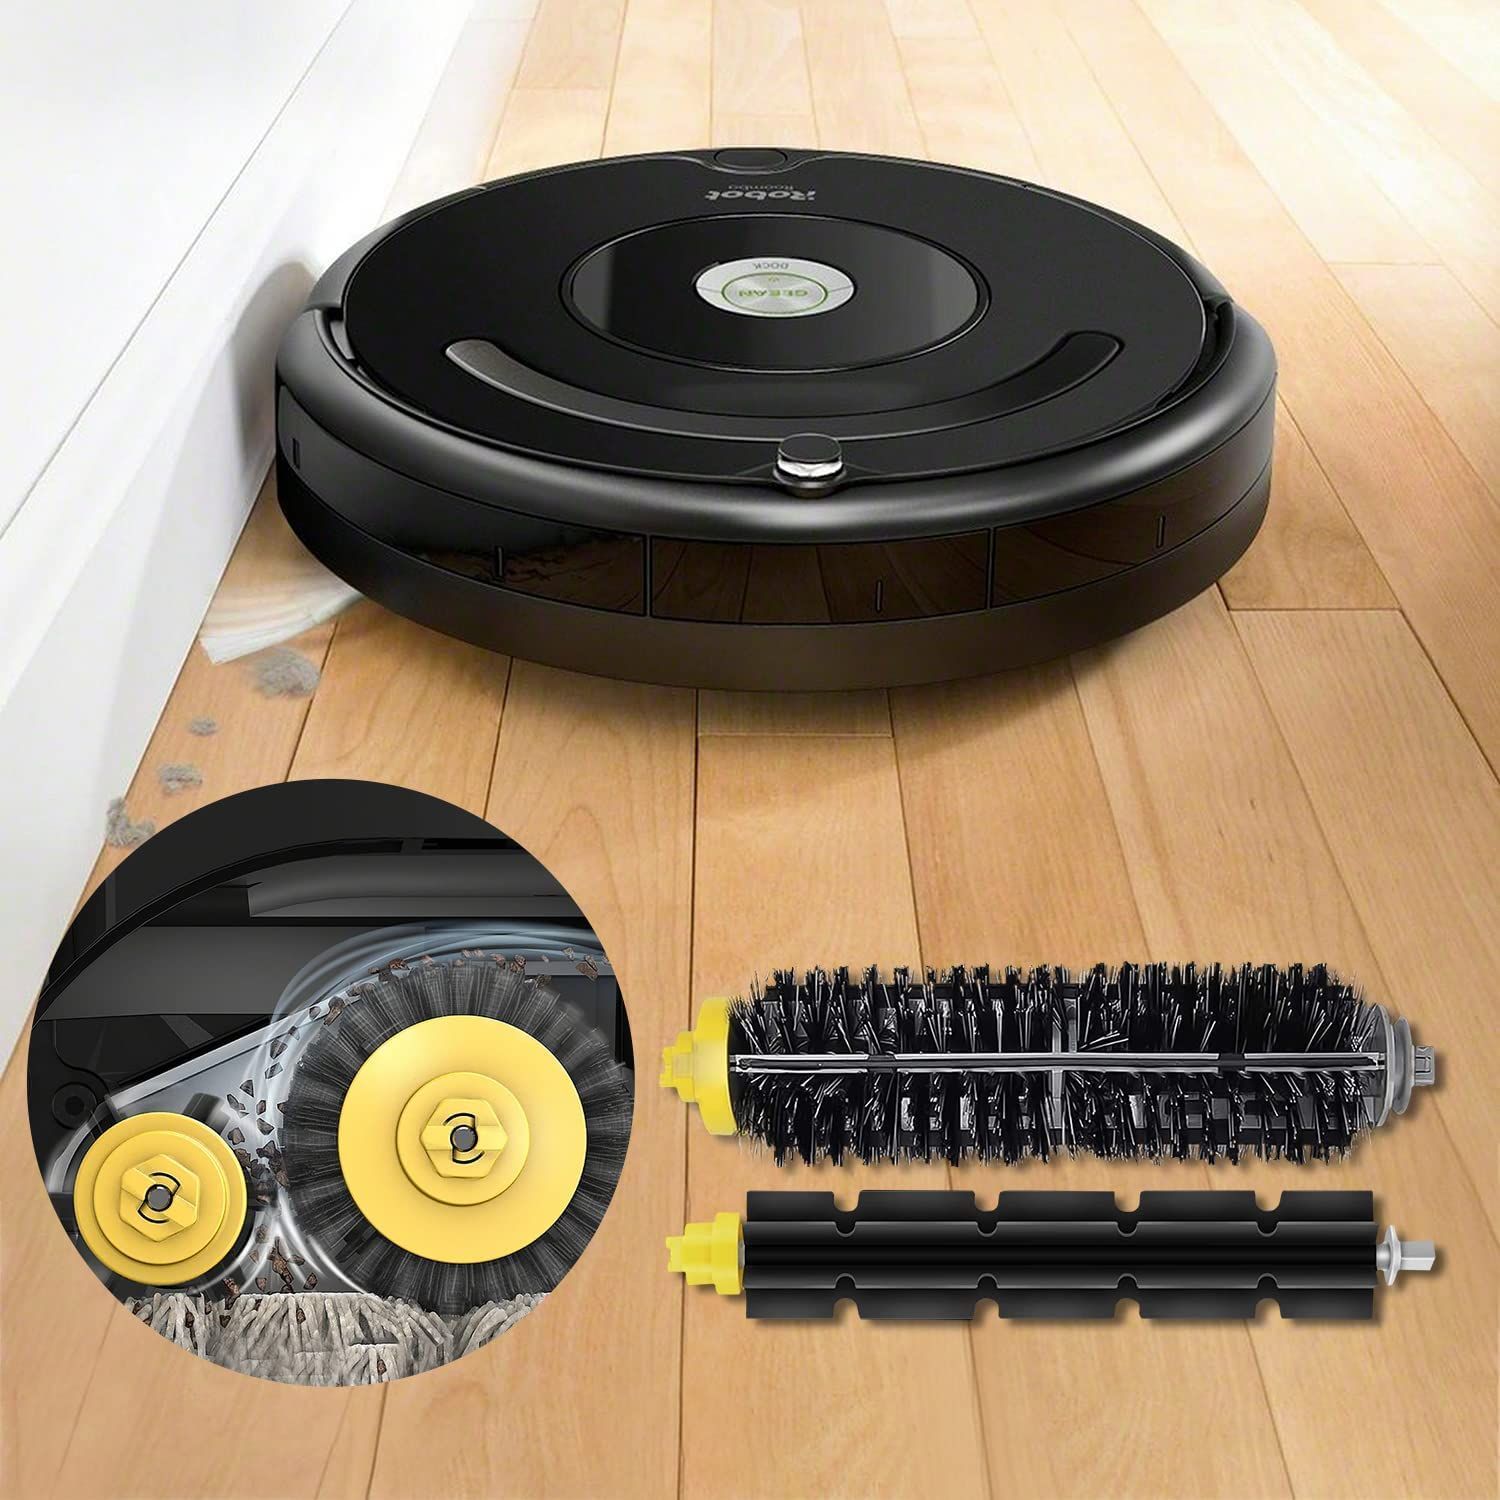 iRobot Roomba 600 700 シリーズ ロール ブラシ Z154